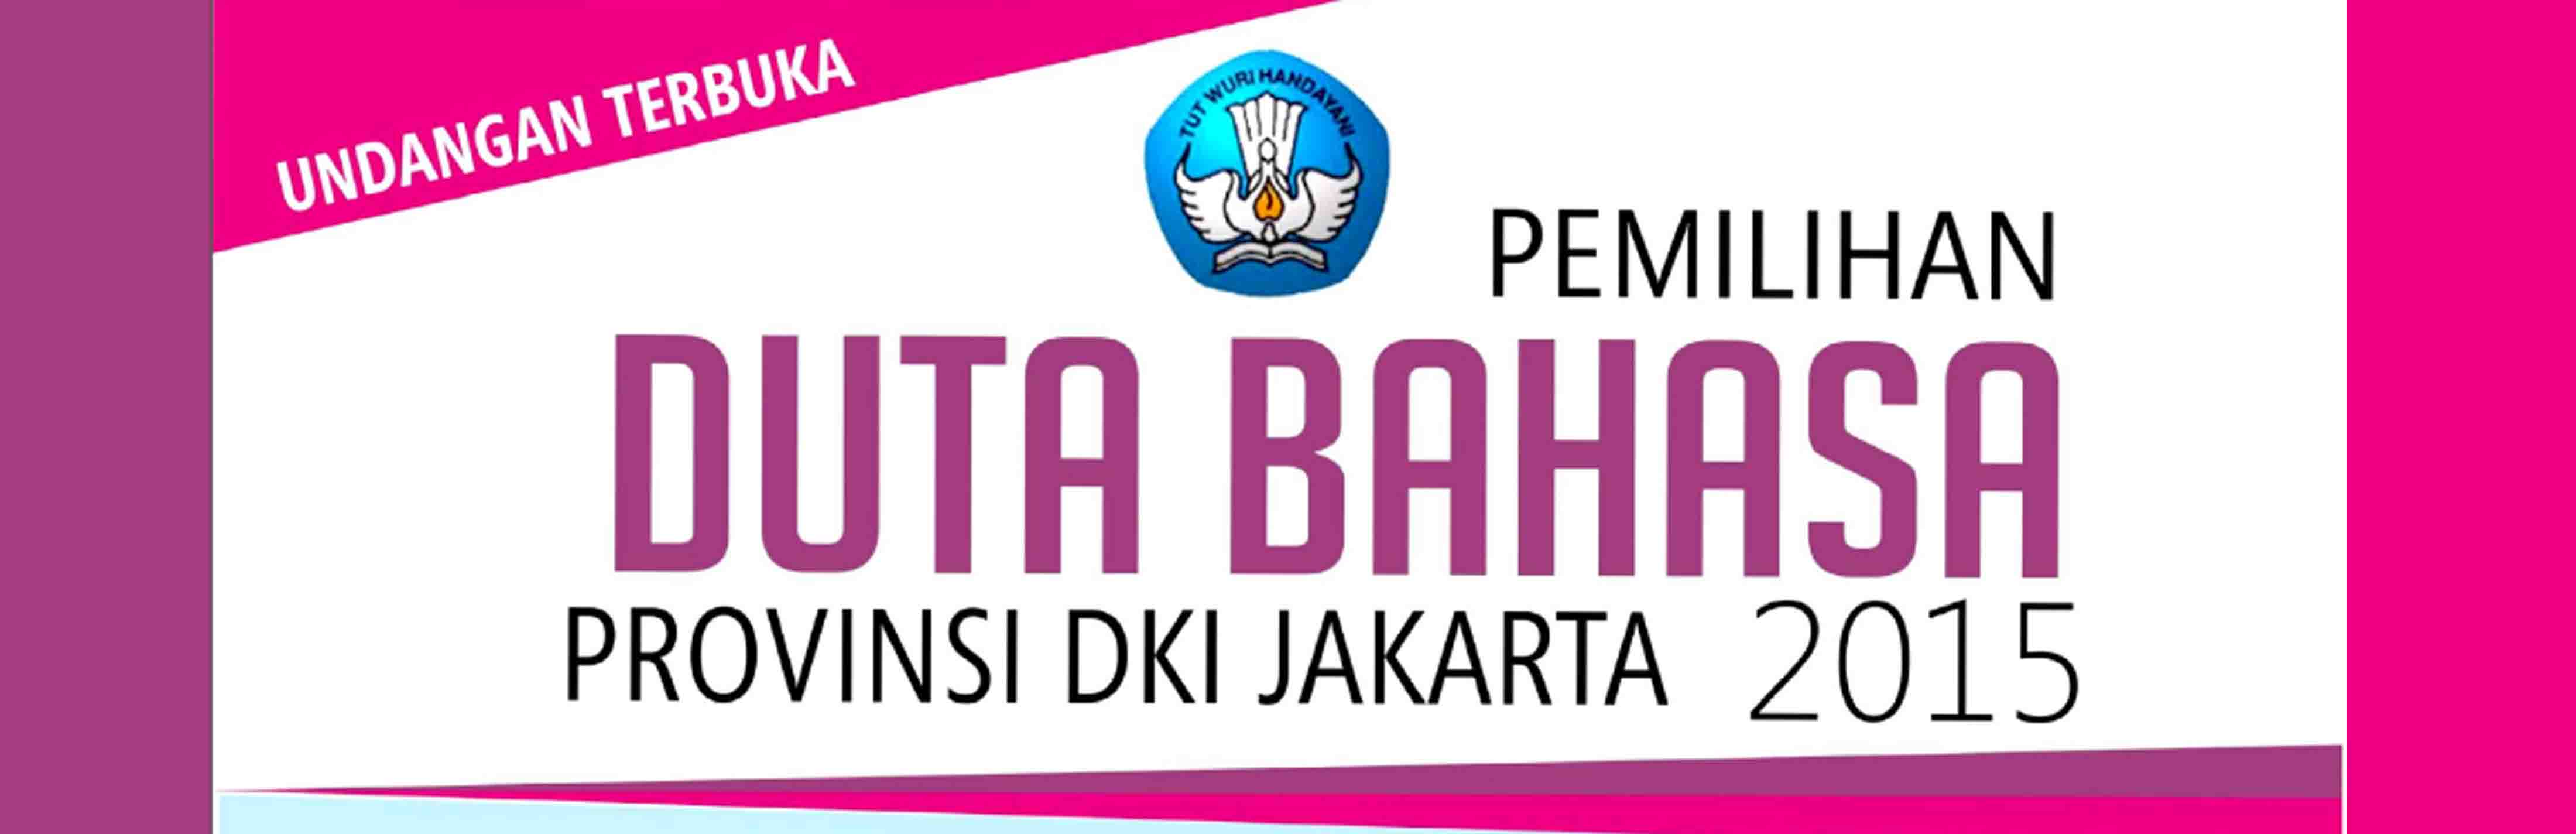 Pendaftaran Pemilihan Duta Bahasa Provinsi DKI Jakarta Tahun 2015 Telah Dibuka